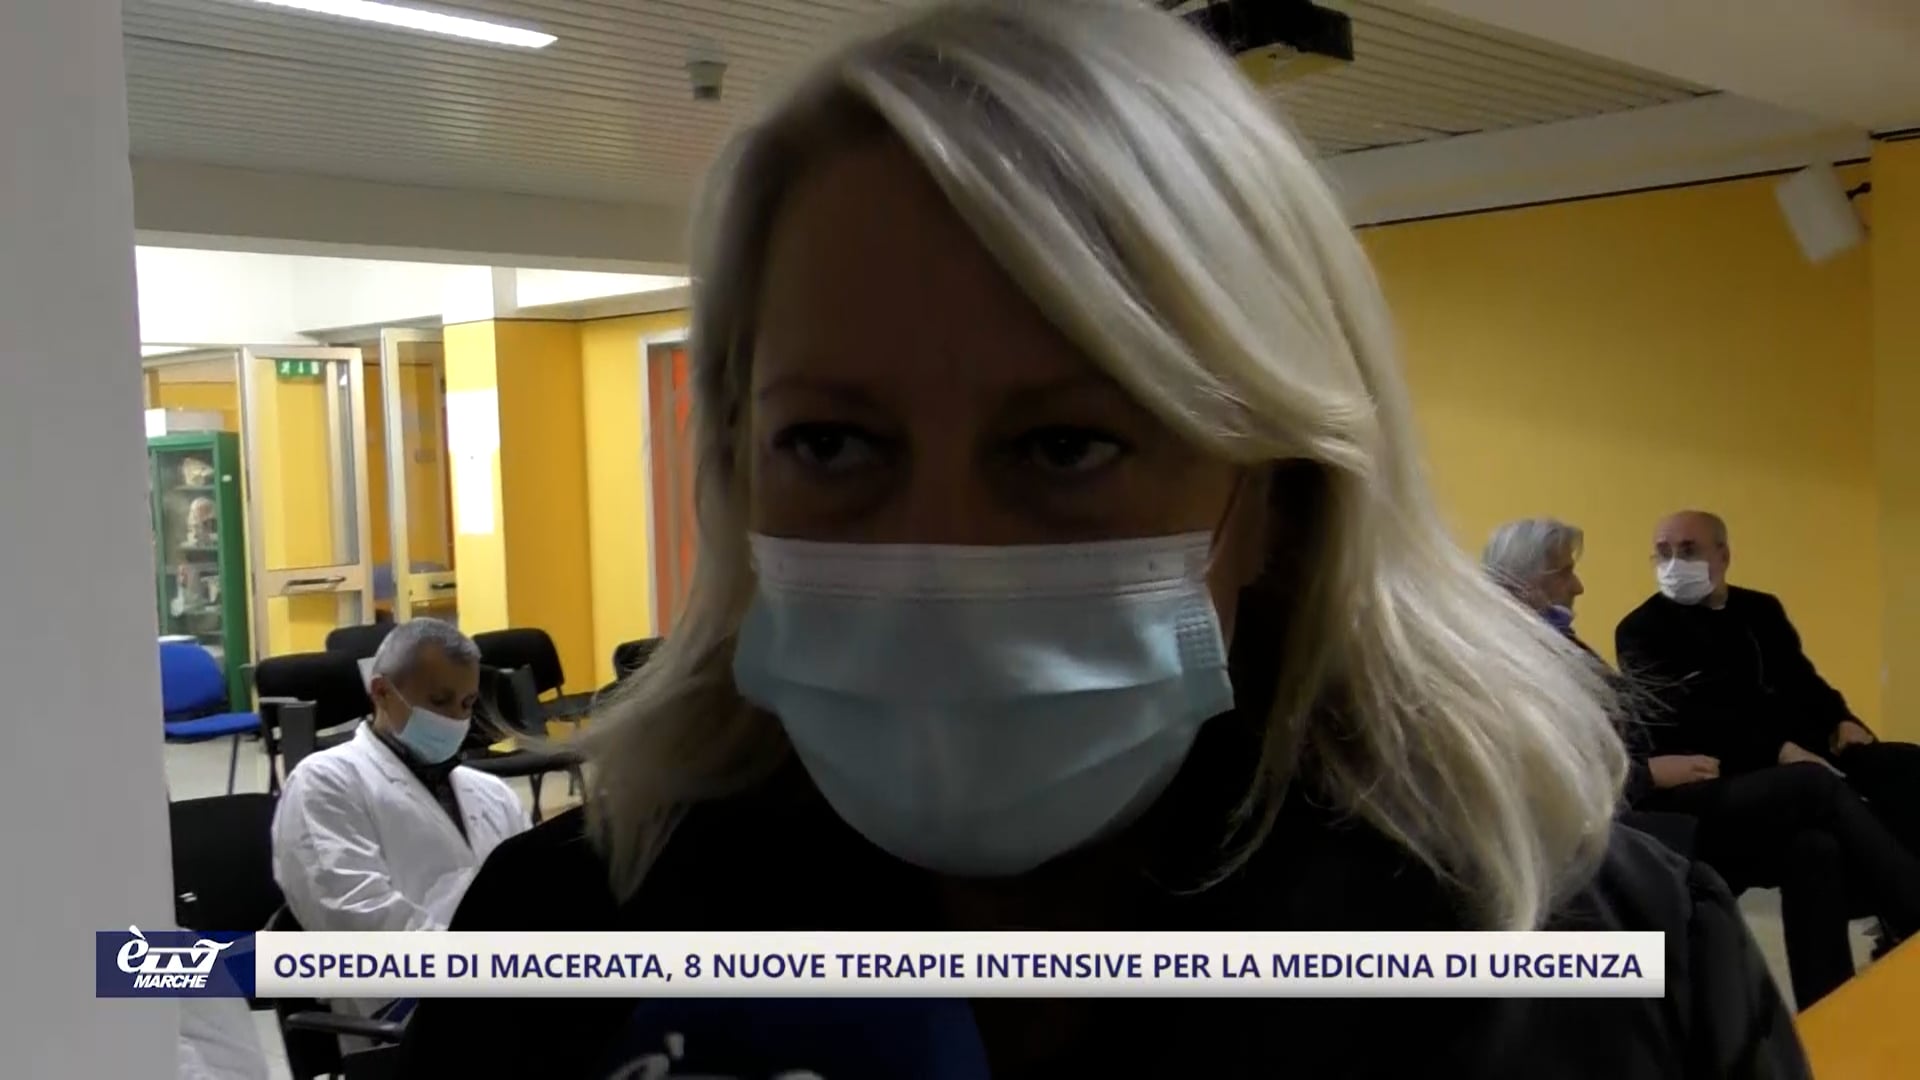 Ospedale di Macerata, 8 nuovi posti letto di terapia intensiva per la medicina di urgenza  